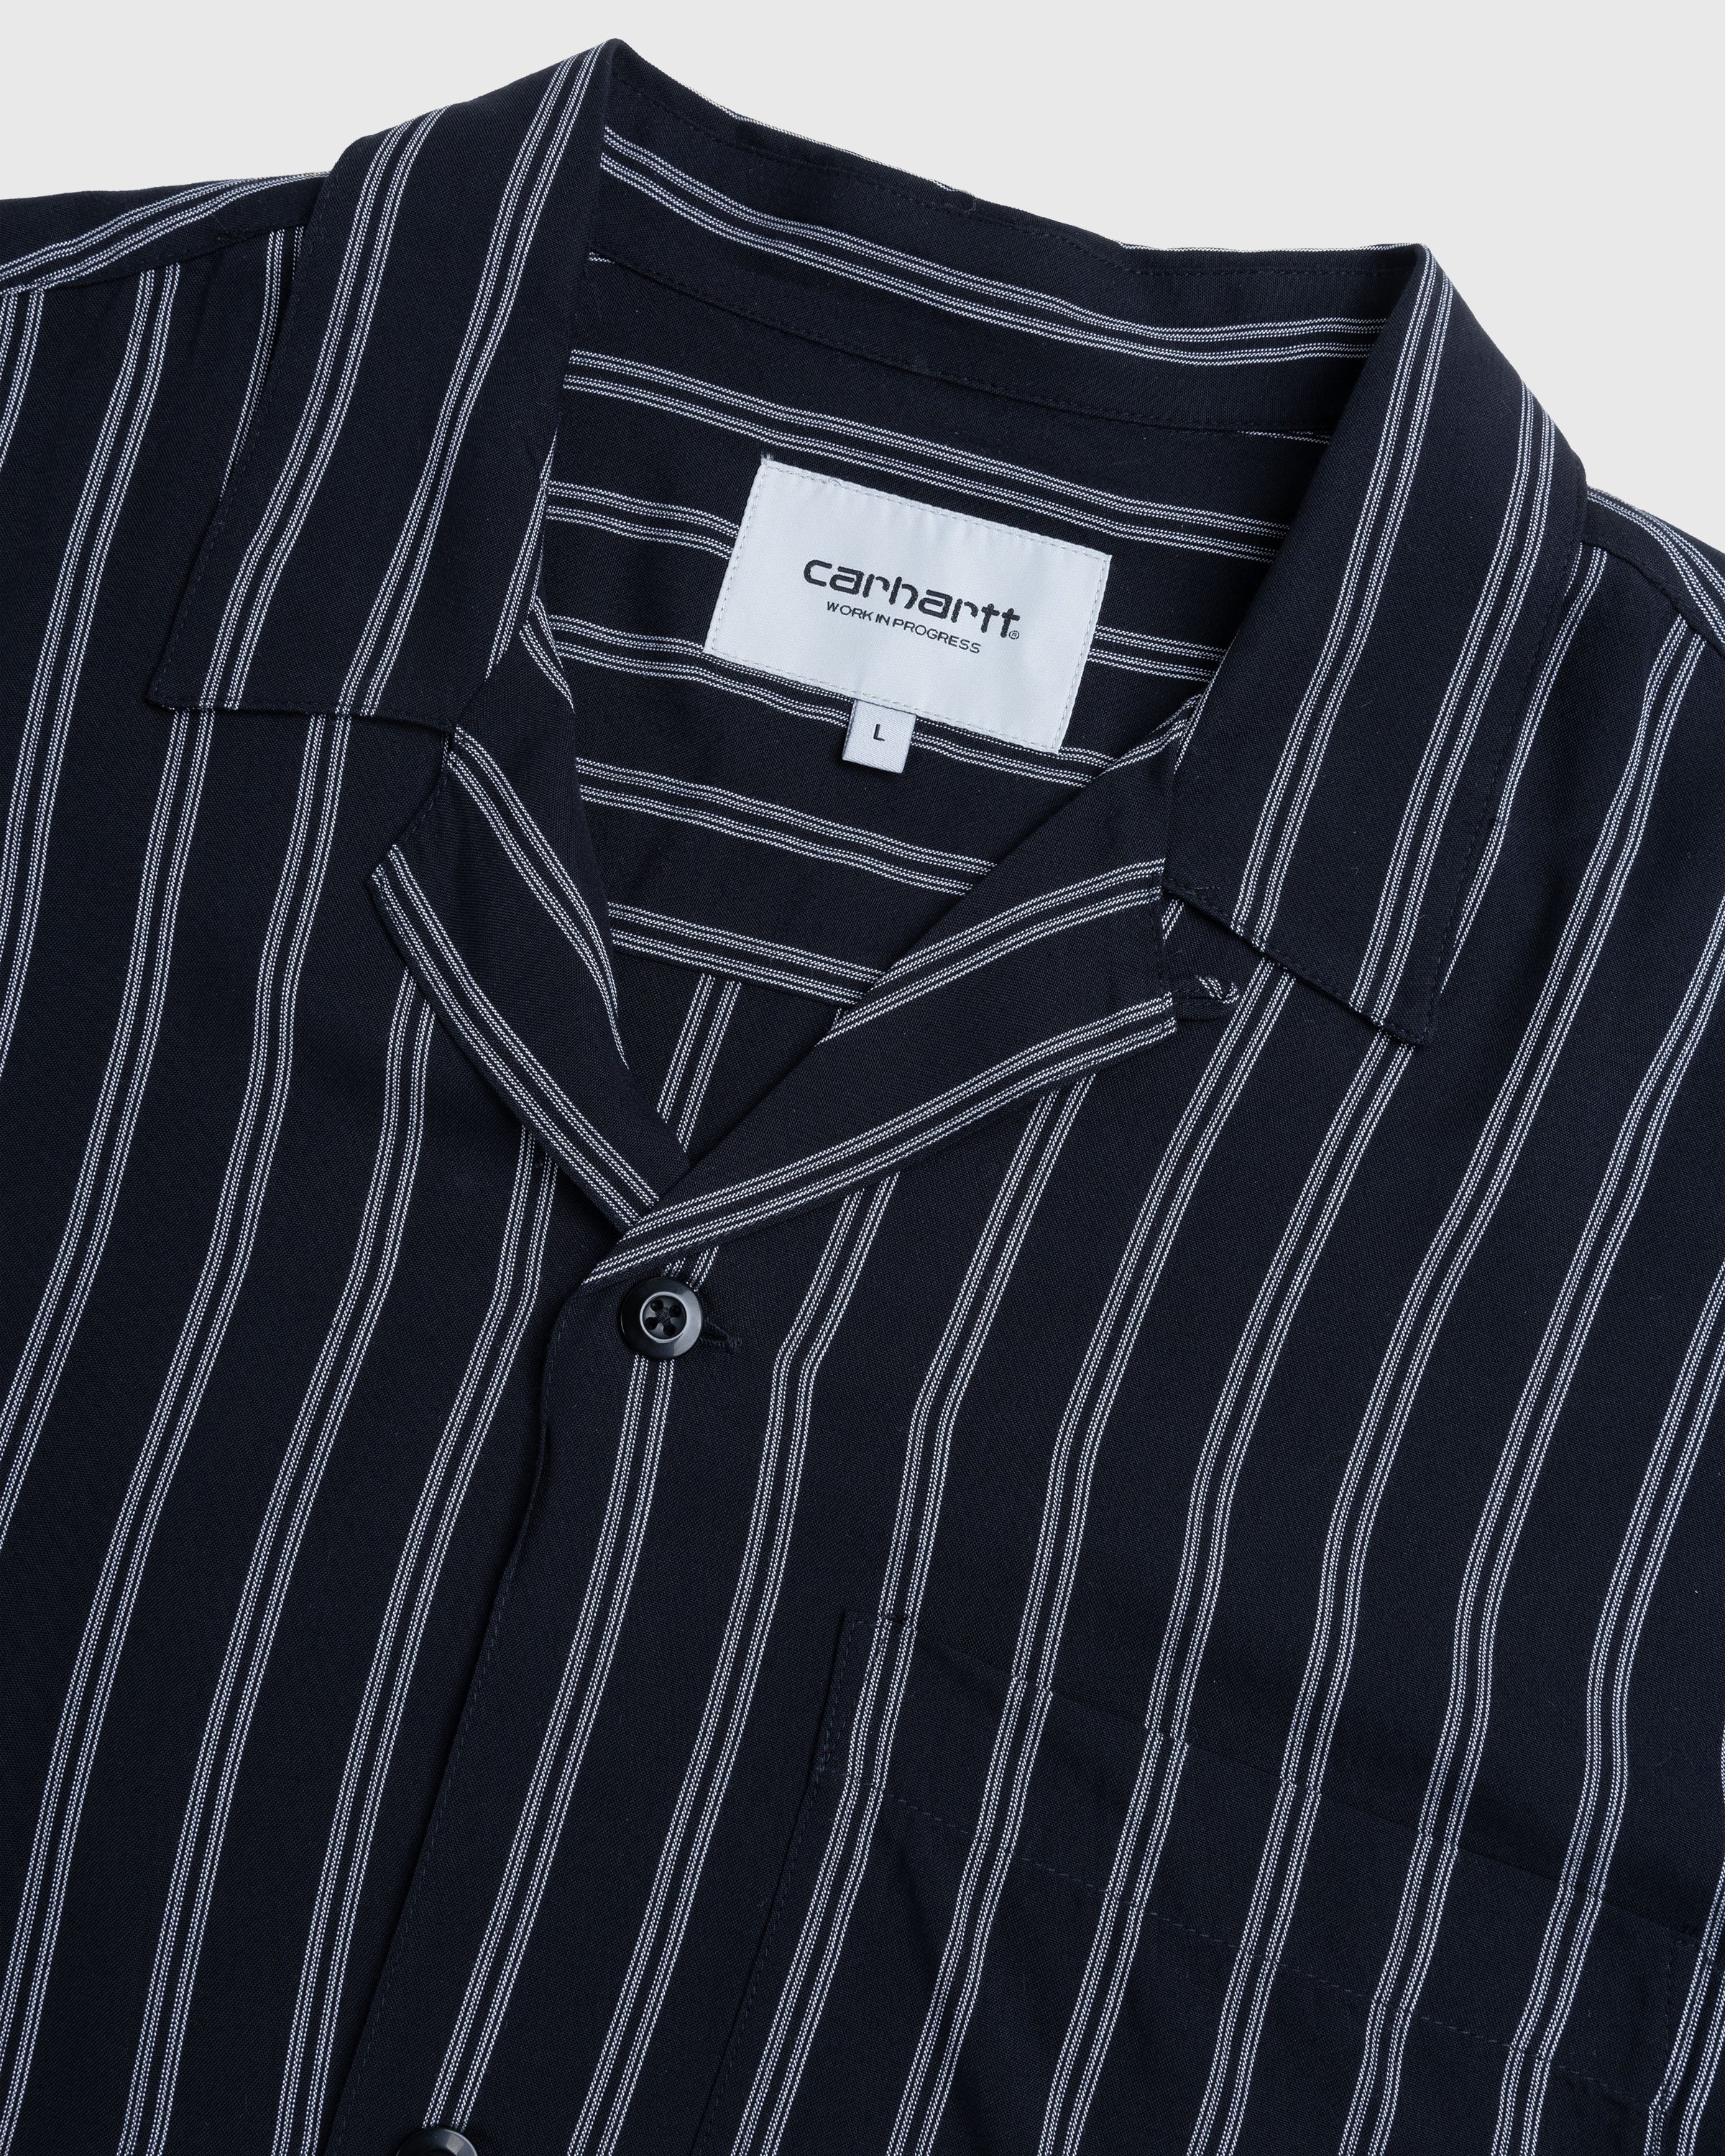 Carhartt WIP - Reyes Stripe Shirt Black - Clothing - Black - Image 6